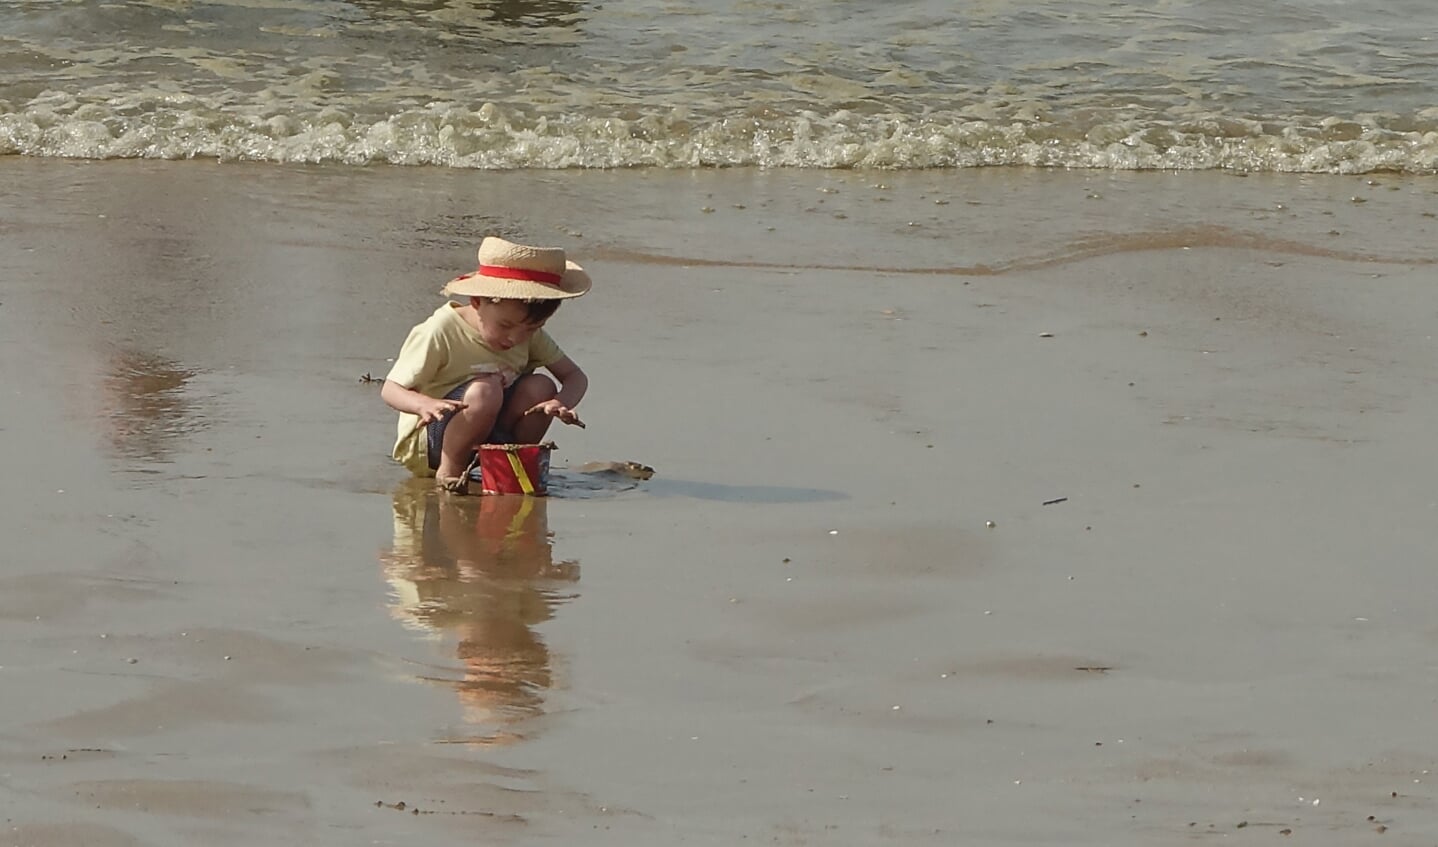 ,,De foto heb ik 2 maande geleden gemaakt op het strand van Cabourg in Frankrijk. Tijden lang was deze jongen geconcentreerd aan de vloedlijn met zand aan het spelen. Zijn wereld bestond alleen uit het emmertje en het zeewater en was zo gefascineerd mee bezig dat al het rumoer om hem heen hem totaal niet bereikte.